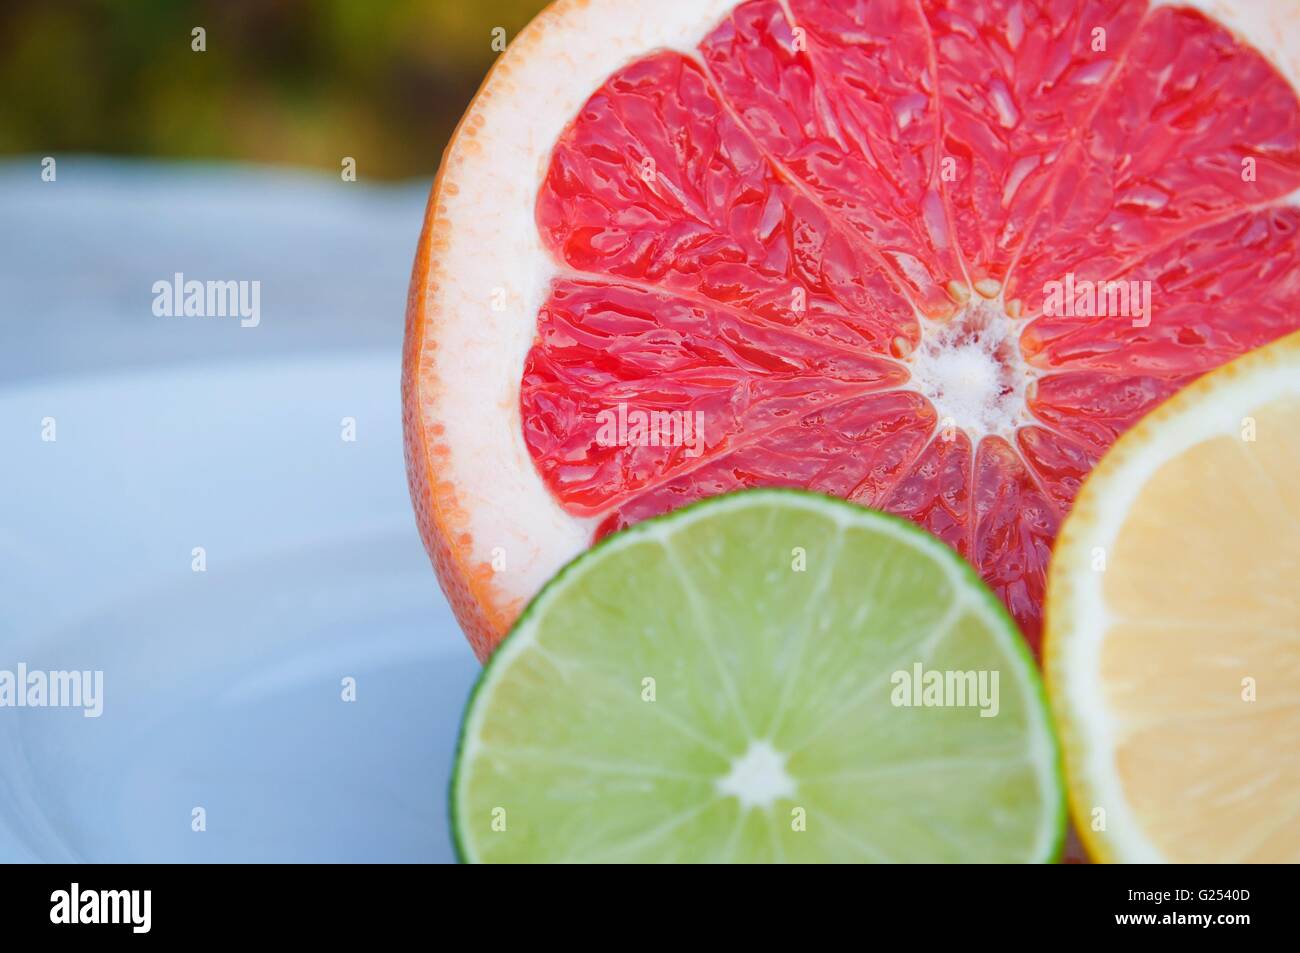 Bunten tropischen Früchten und Scheiben - Zitrone, Limette, rote grapefruit Stockfoto